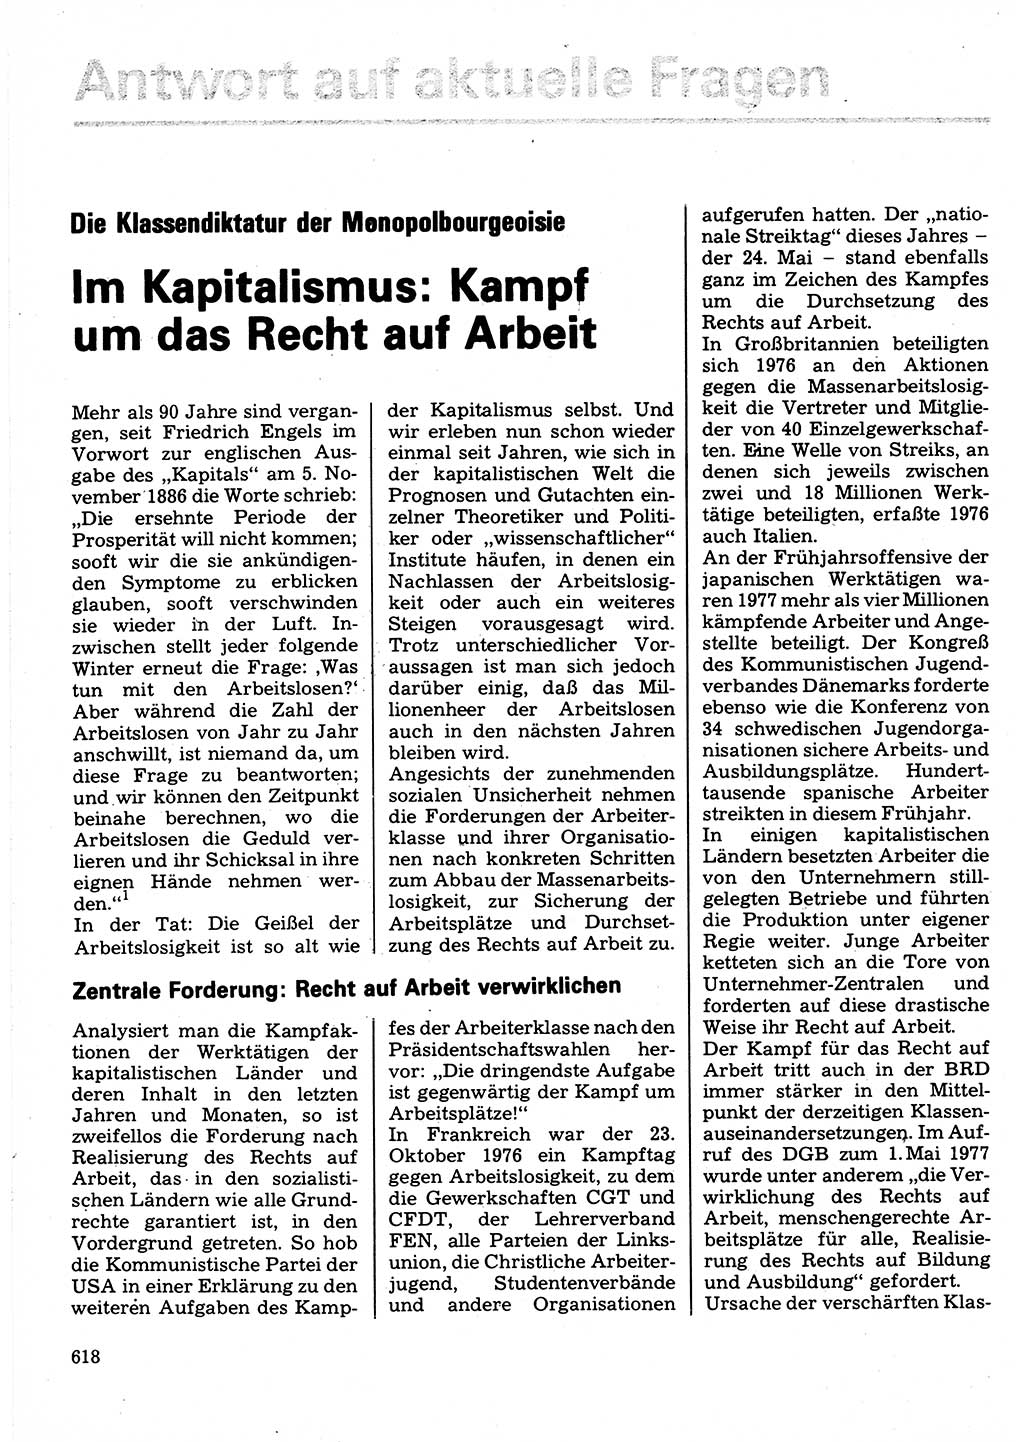 Neuer Weg (NW), Organ des Zentralkomitees (ZK) der SED (Sozialistische Einheitspartei Deutschlands) für Fragen des Parteilebens, 32. Jahrgang [Deutsche Demokratische Republik (DDR)] 1977, Seite 618 (NW ZK SED DDR 1977, S. 618)